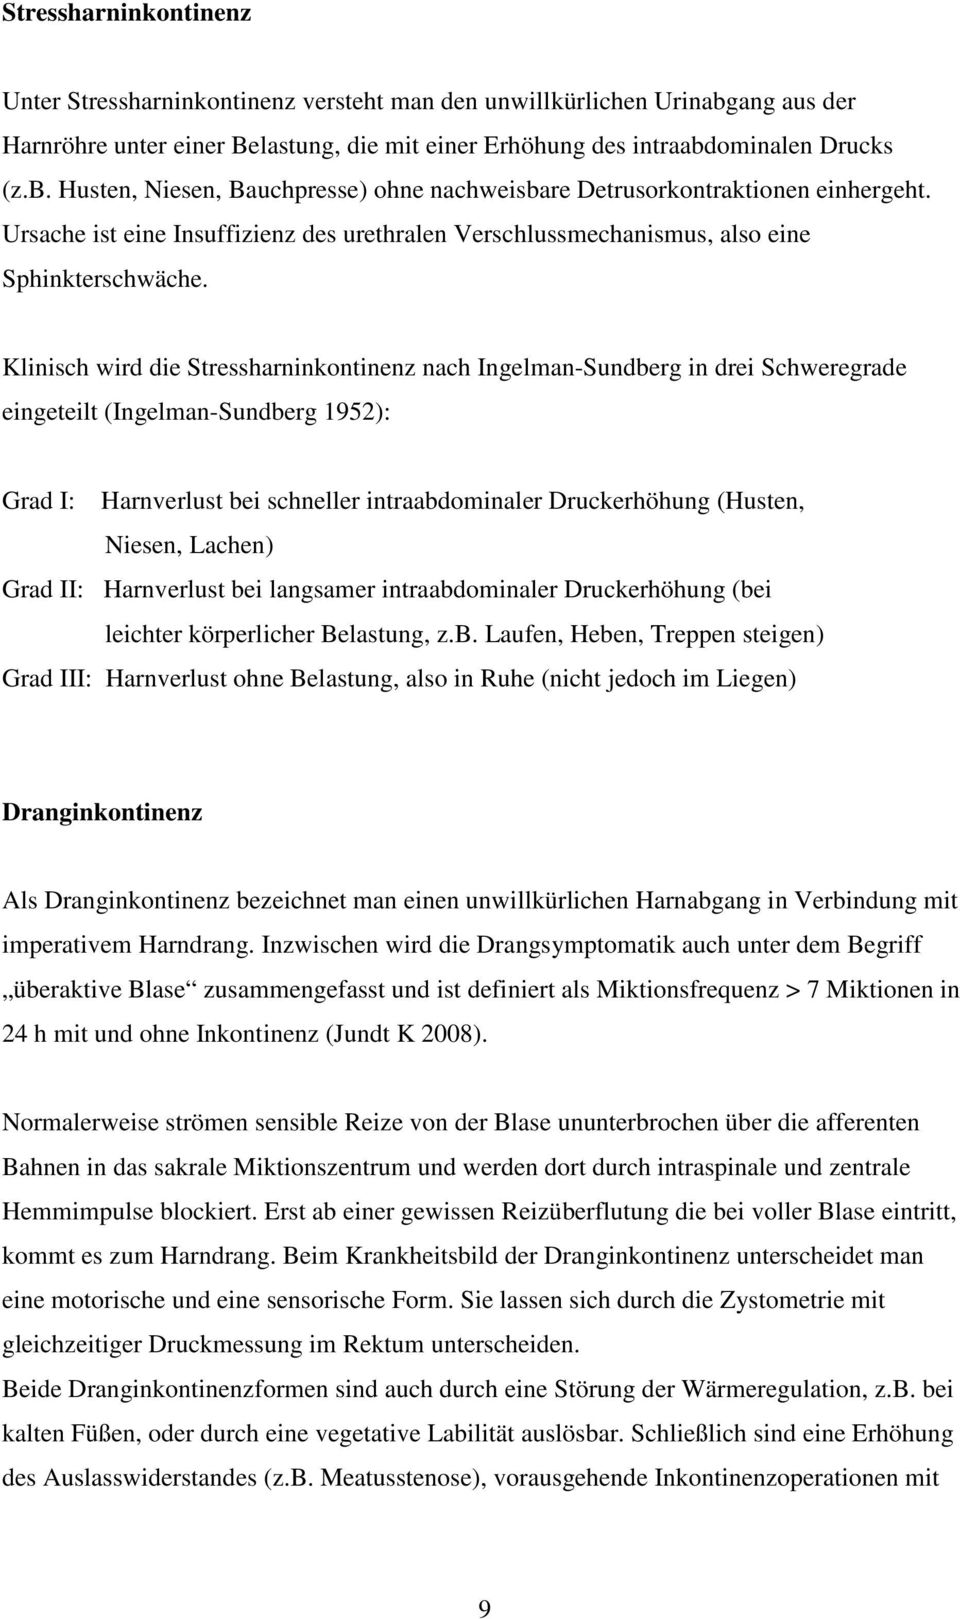 Klinisch wird die Stressharninkontinenz nach Ingelman-Sundberg in drei Schweregrade eingeteilt (Ingelman-Sundberg 1952): Grad I: Harnverlust bei schneller intraabdominaler Druckerhöhung (Husten,